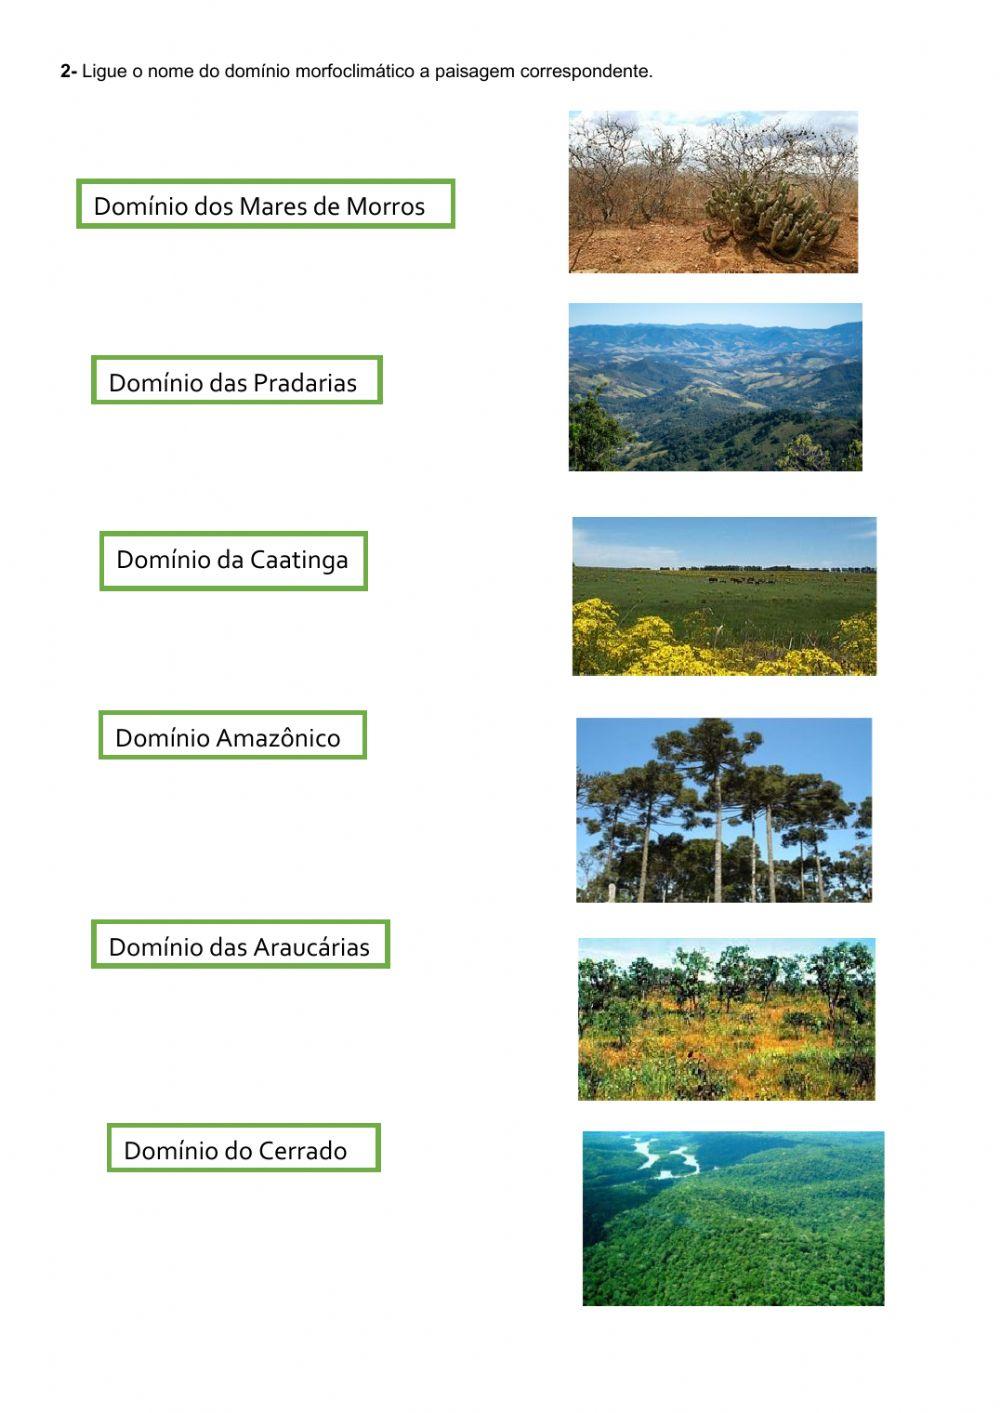 Paisagens e domínios naturais no Brasil e no mundo